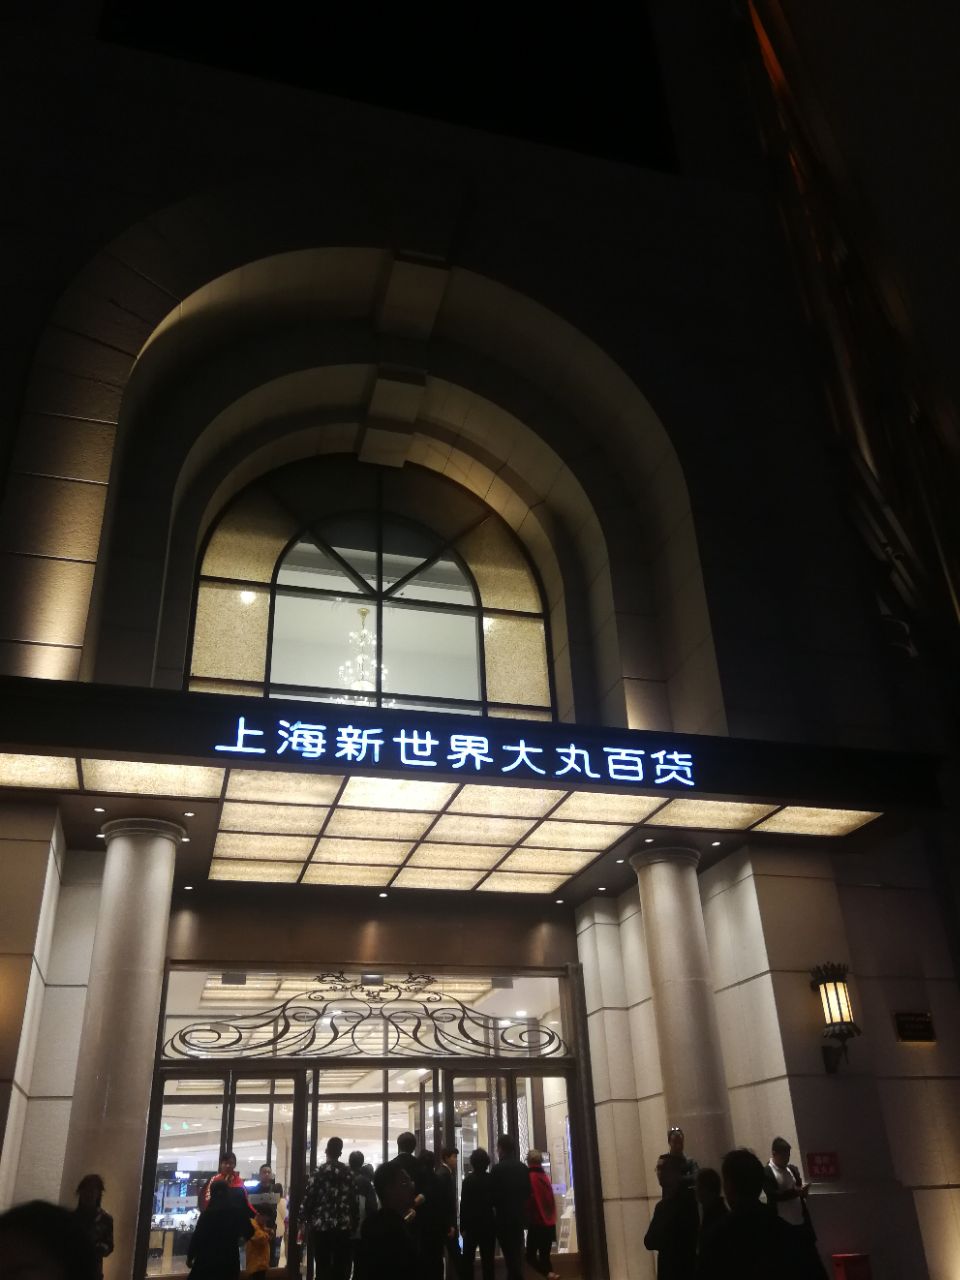 【携程攻略】上海新世界大丸百货购物,高档百货,很多奢侈品.